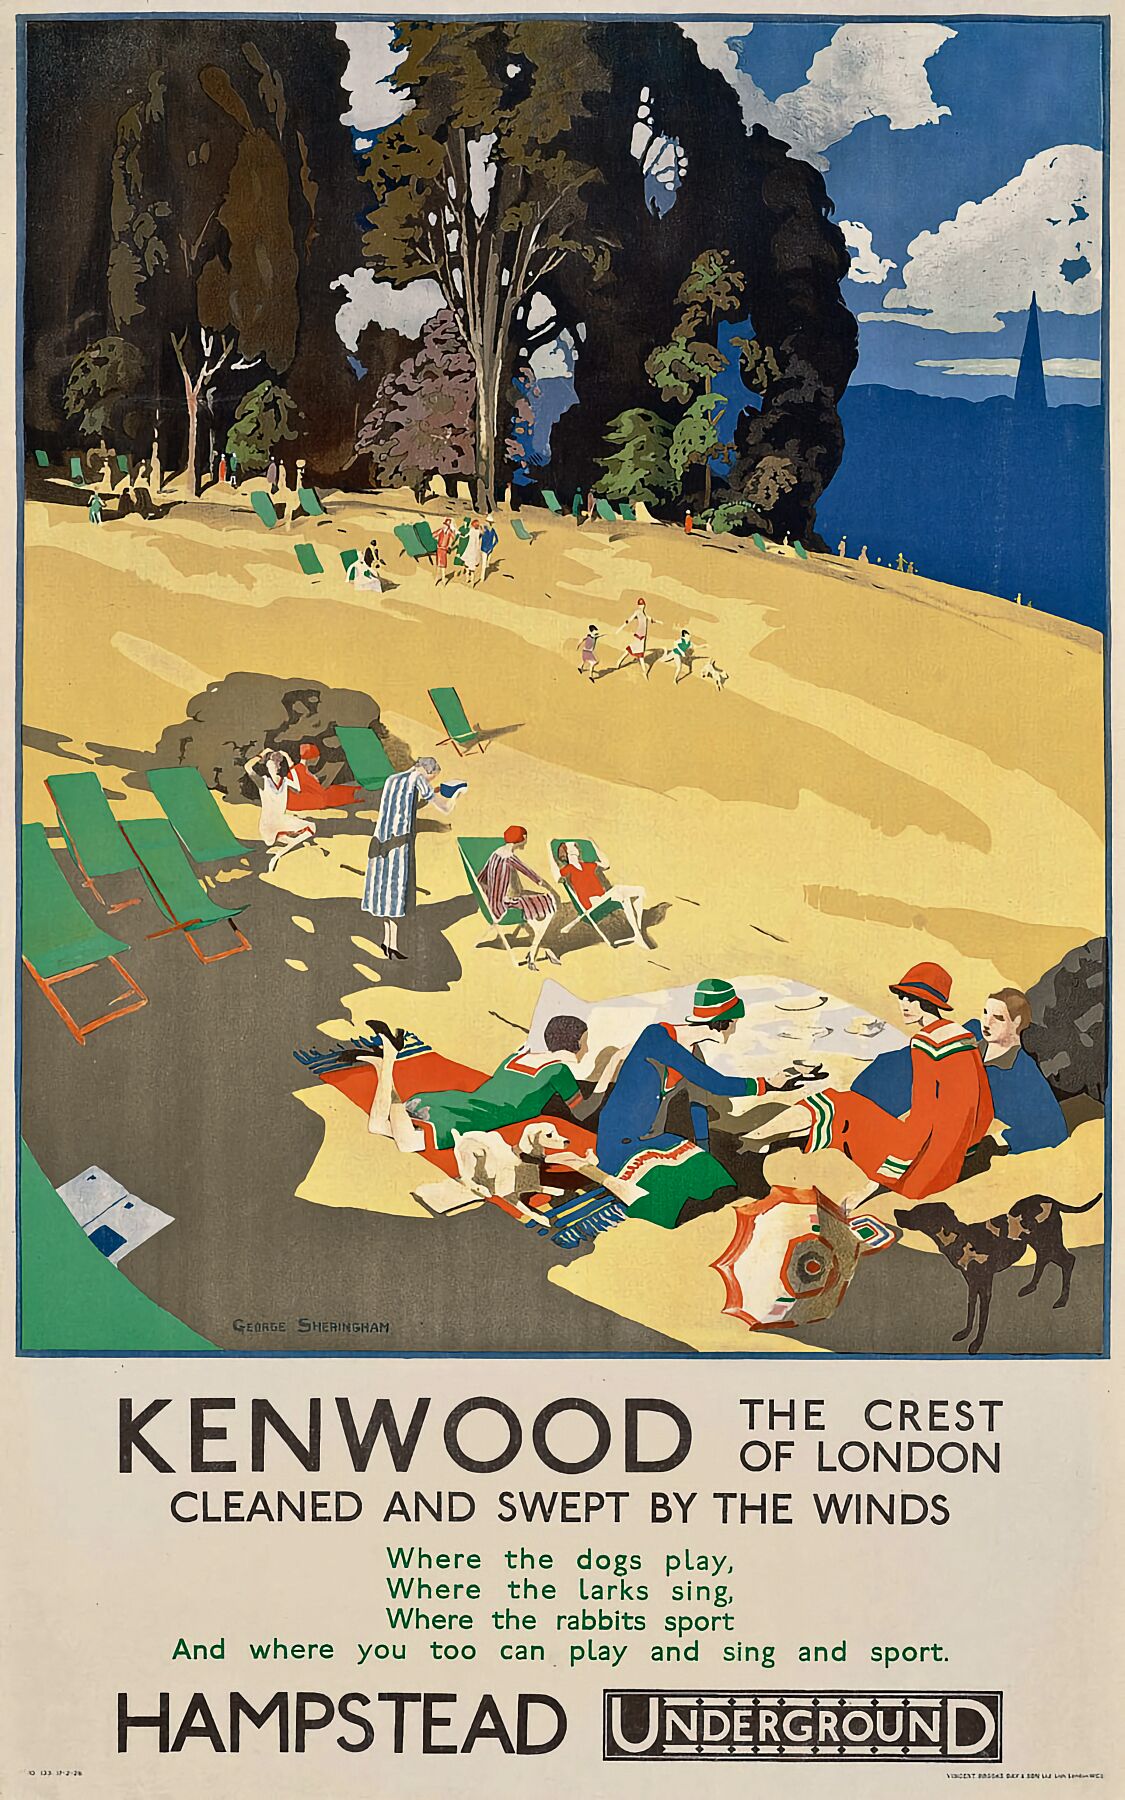 Kenwood by George Sheringham - 1926